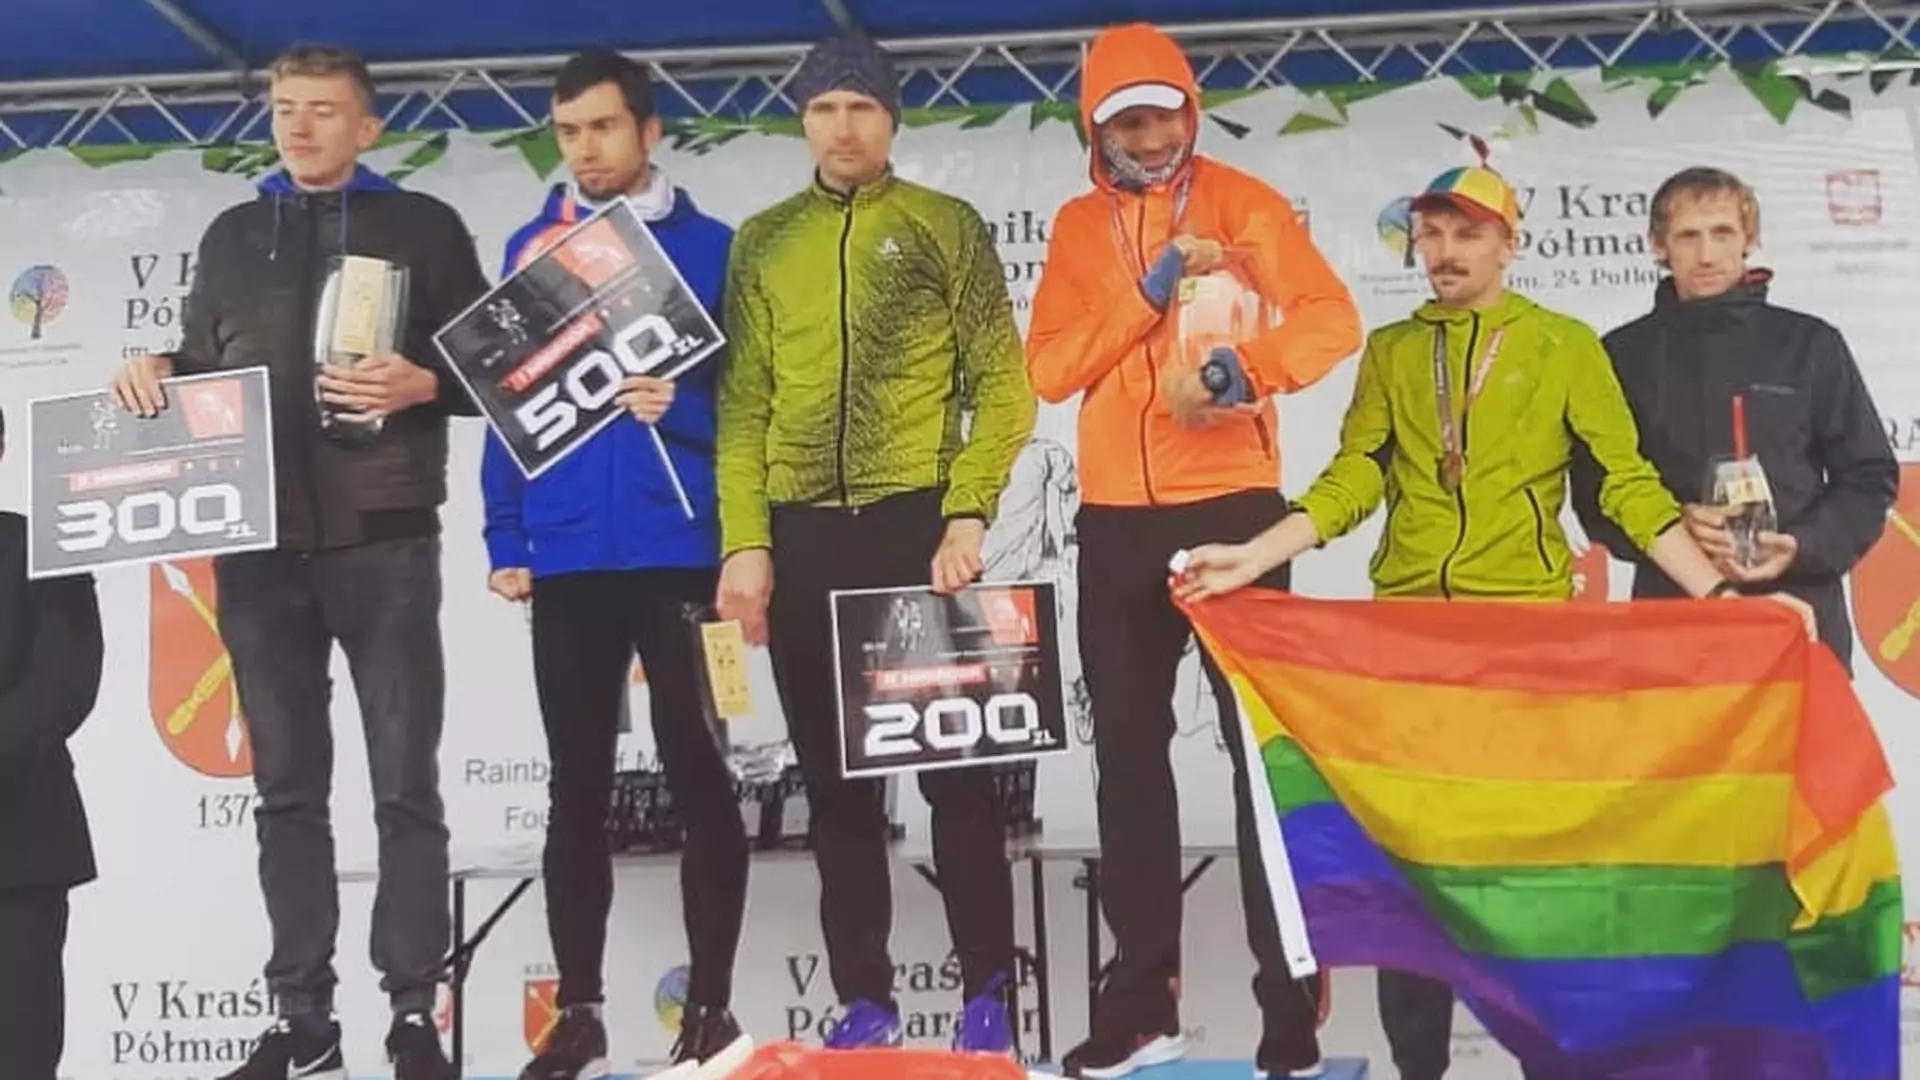 Lekarz wystartował w półmaratonie w Kraśniku. Medal odebrał z flagą LGBT